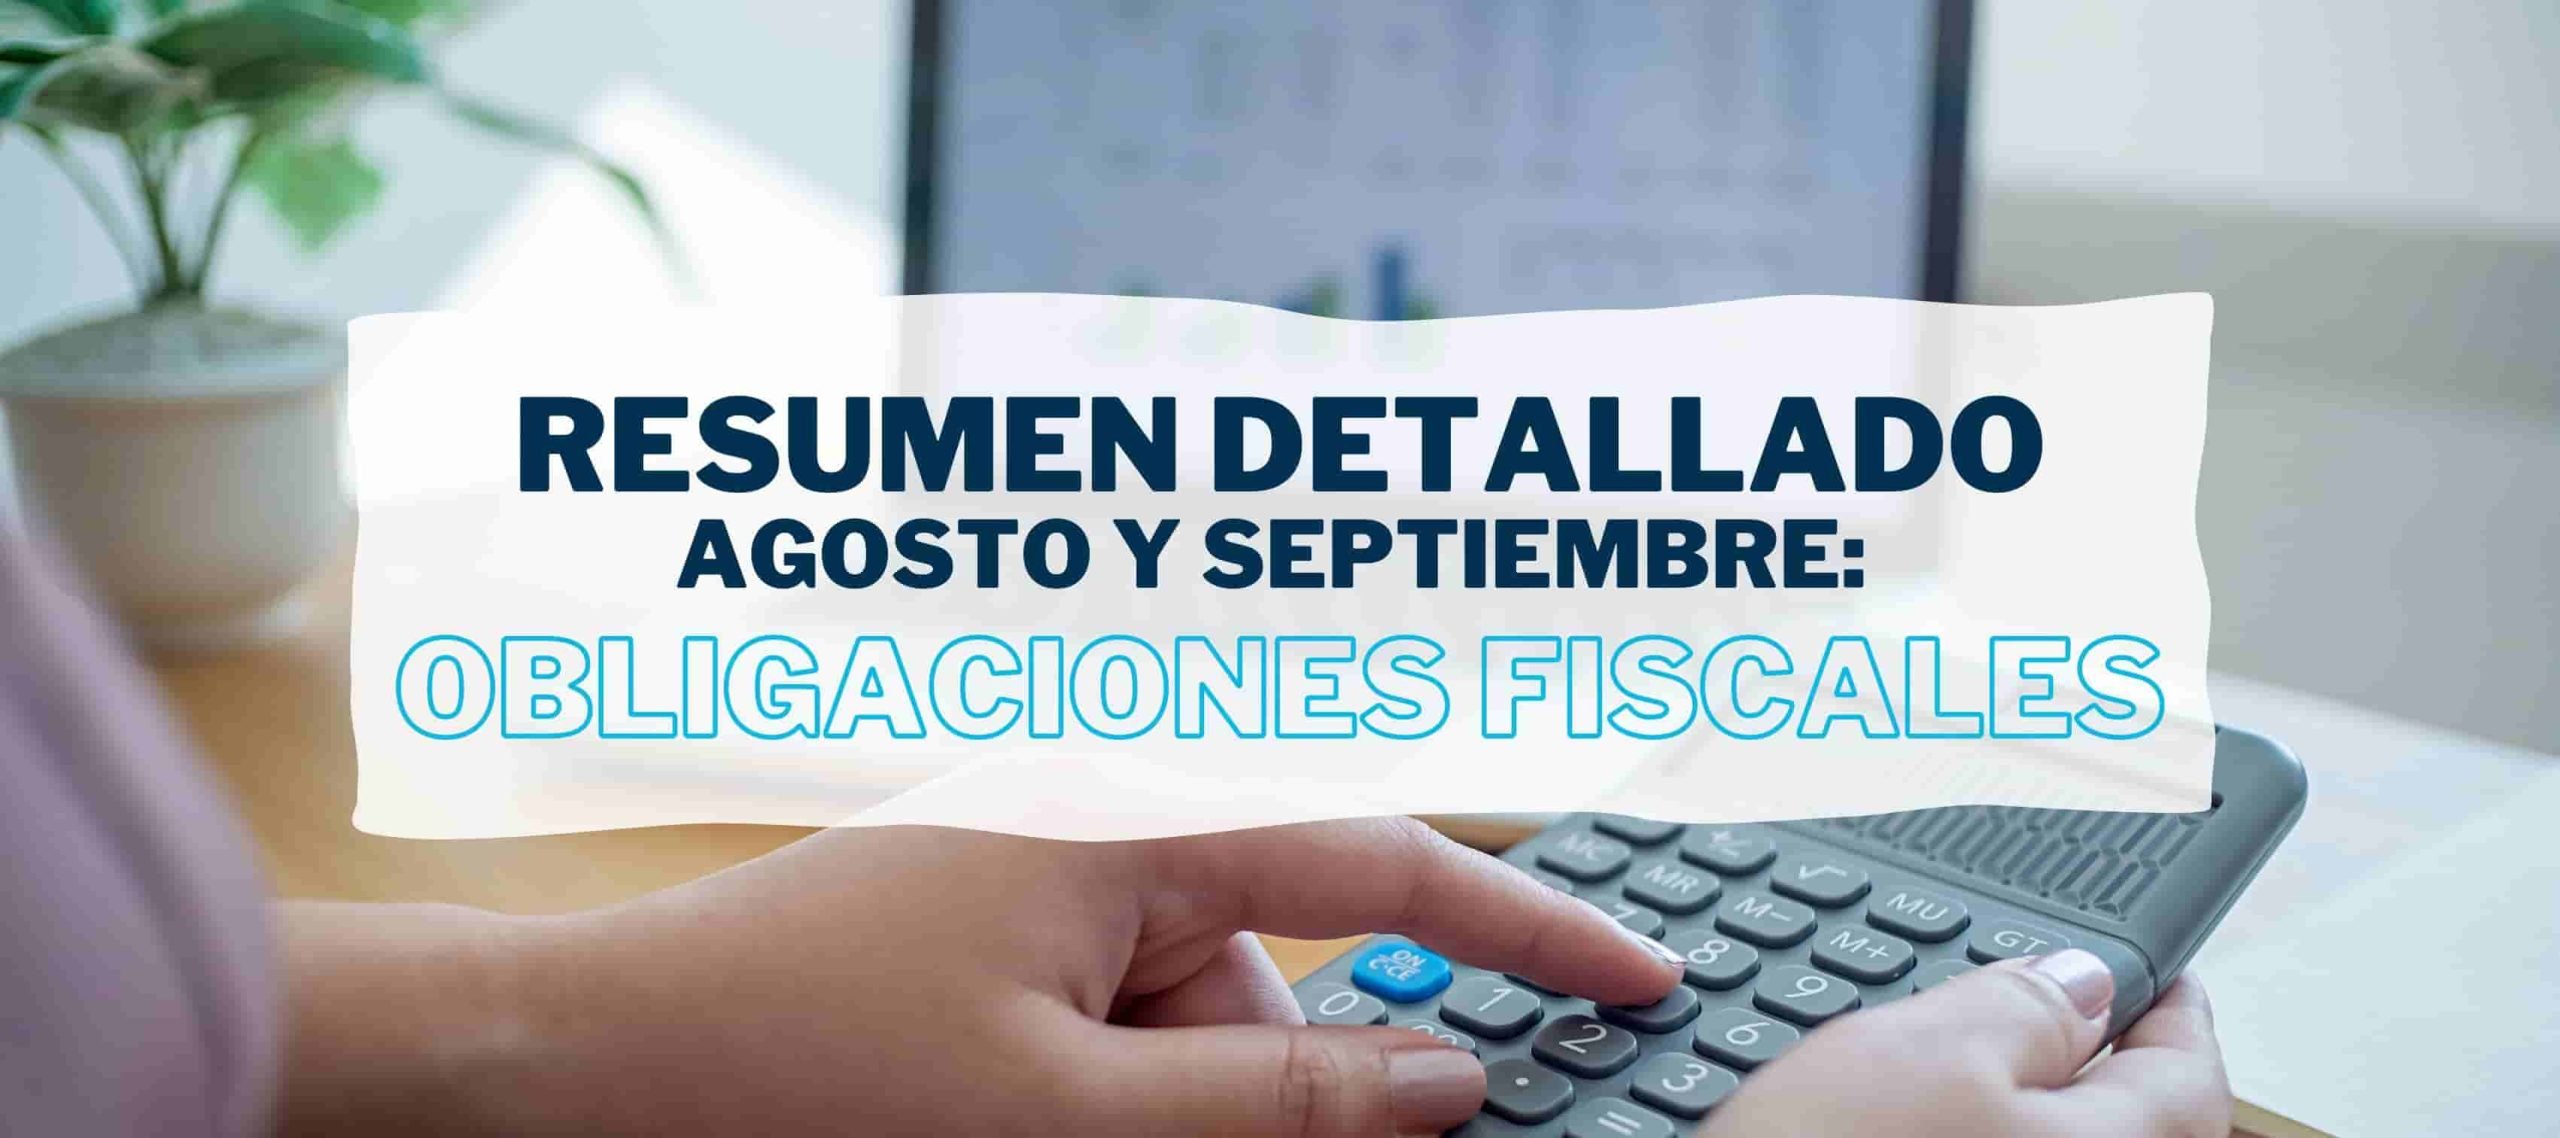 Persona responsable del departamento contable o fiscal de una empresa consulta las obligaciones fiscales en agosto y septiembre en el artículo de Iniciativa Fiscal.